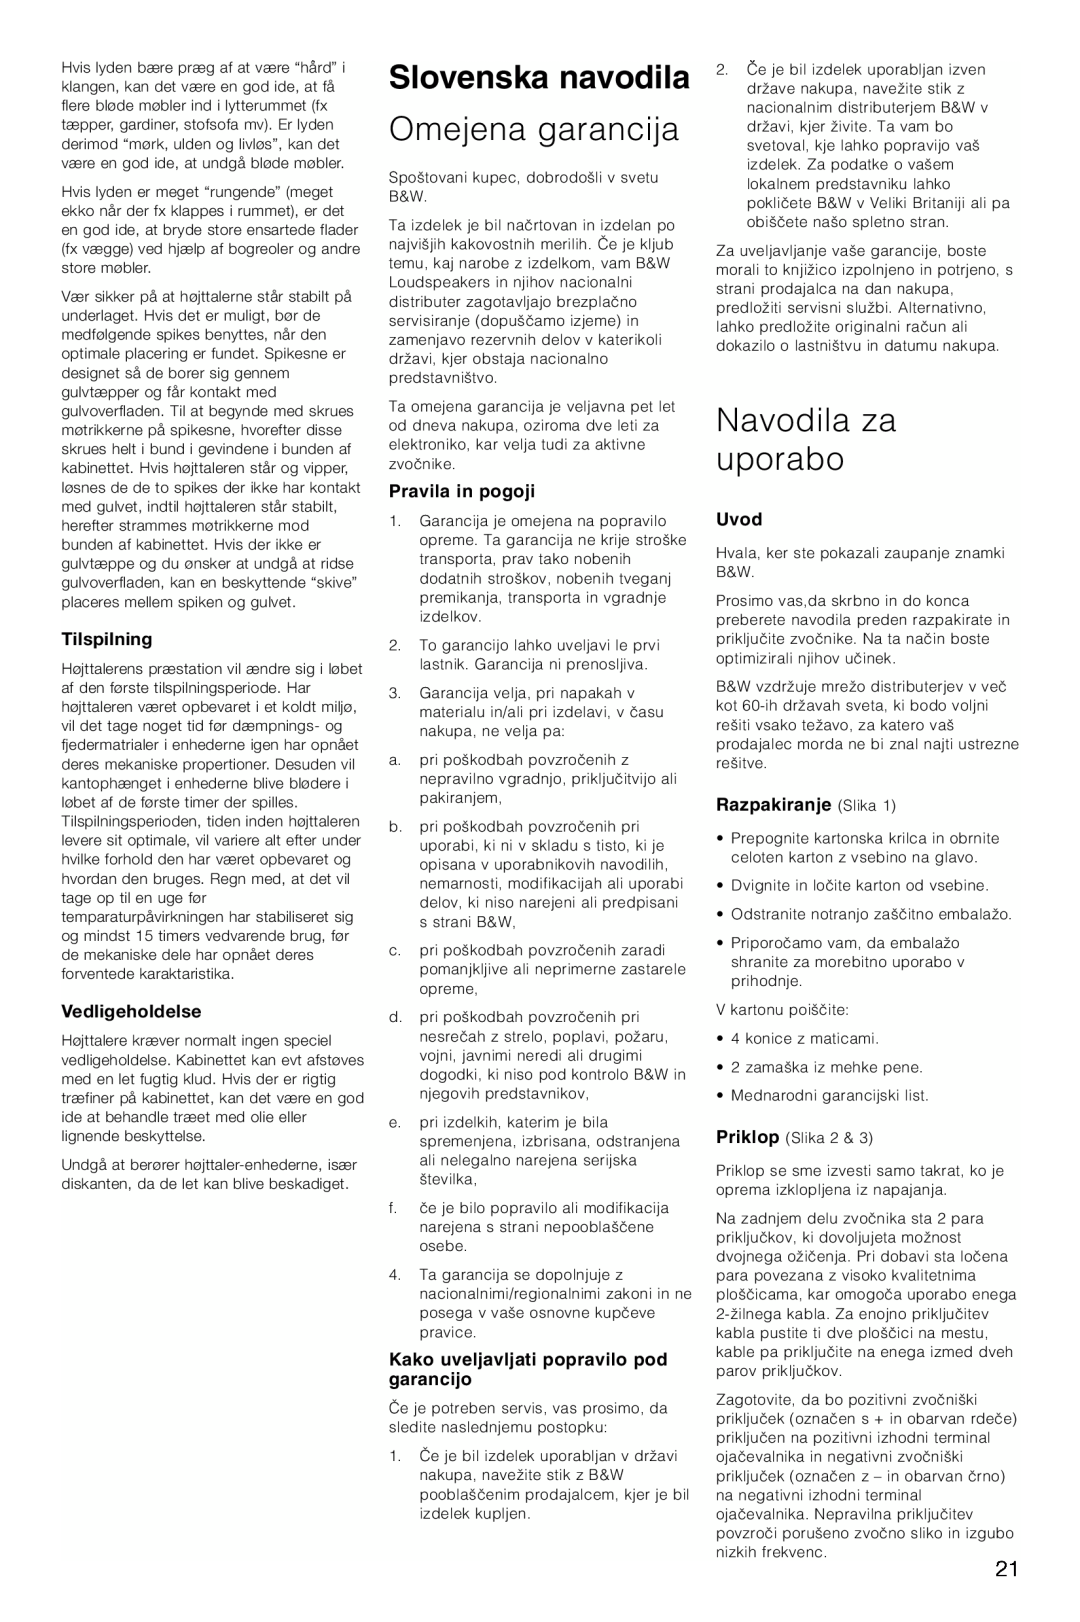 Bowers & Wilkins CM6, CM4 Slovenska navodila, Omejena garancija, Navodila za uporabo, Tilspilning, Vedligeholdelse, Uvod 